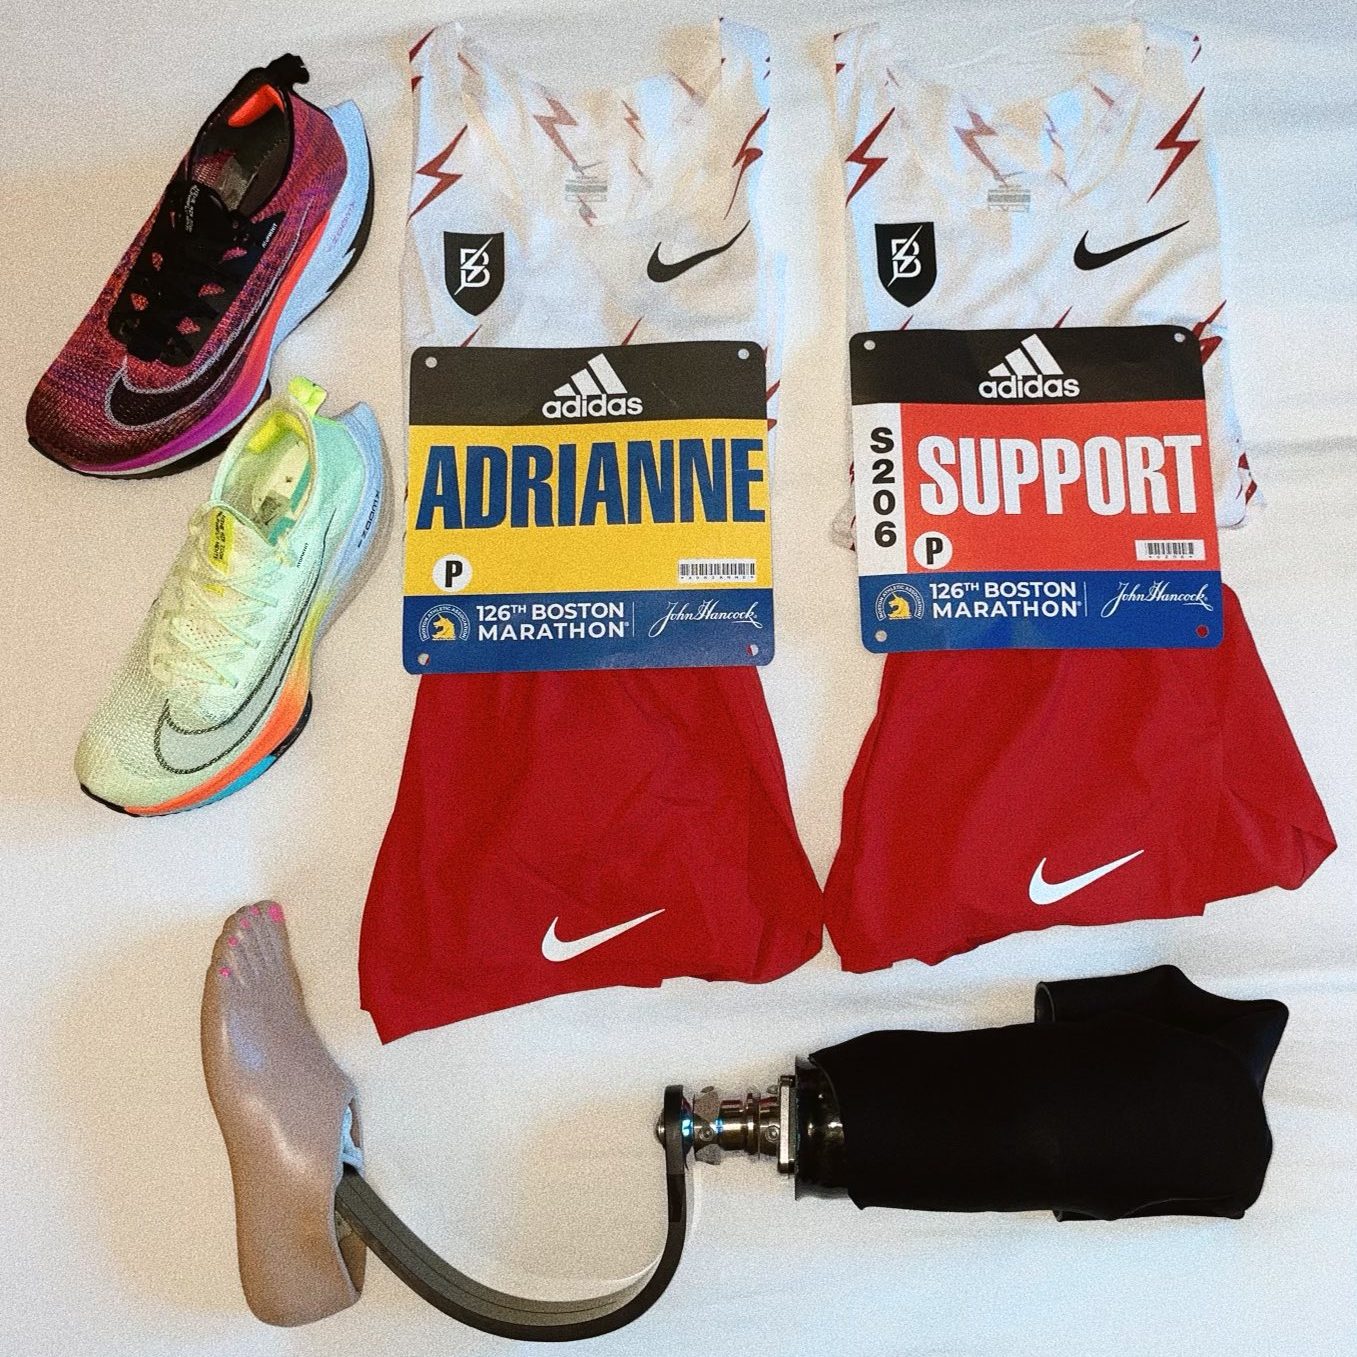 El emotivo regreso de Adrianne Haslet, sobreviviente del atentado de 2013, al Maratón de Boston